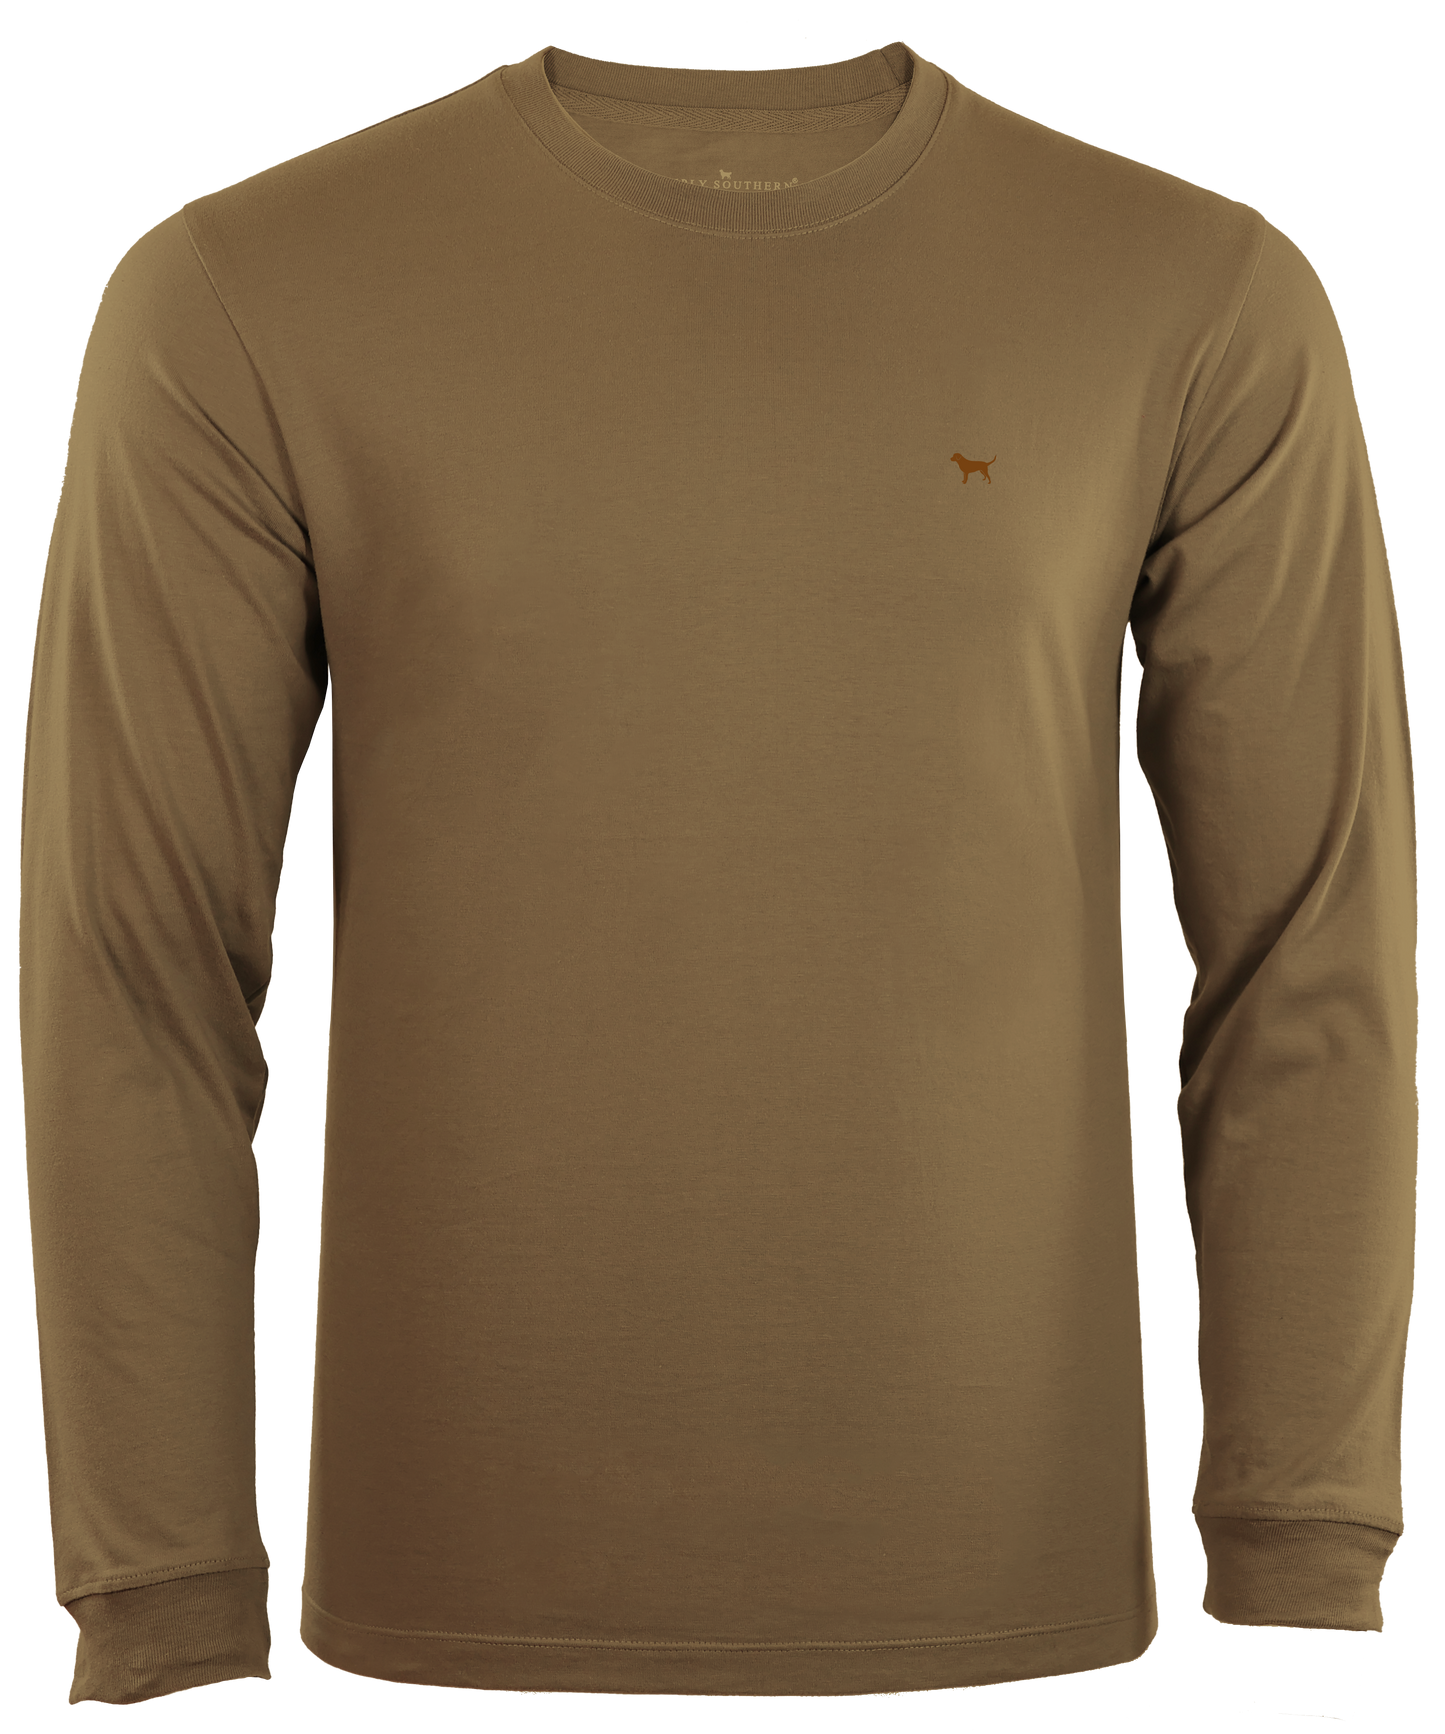 Men's Deer Long Sleeve T-Shirt